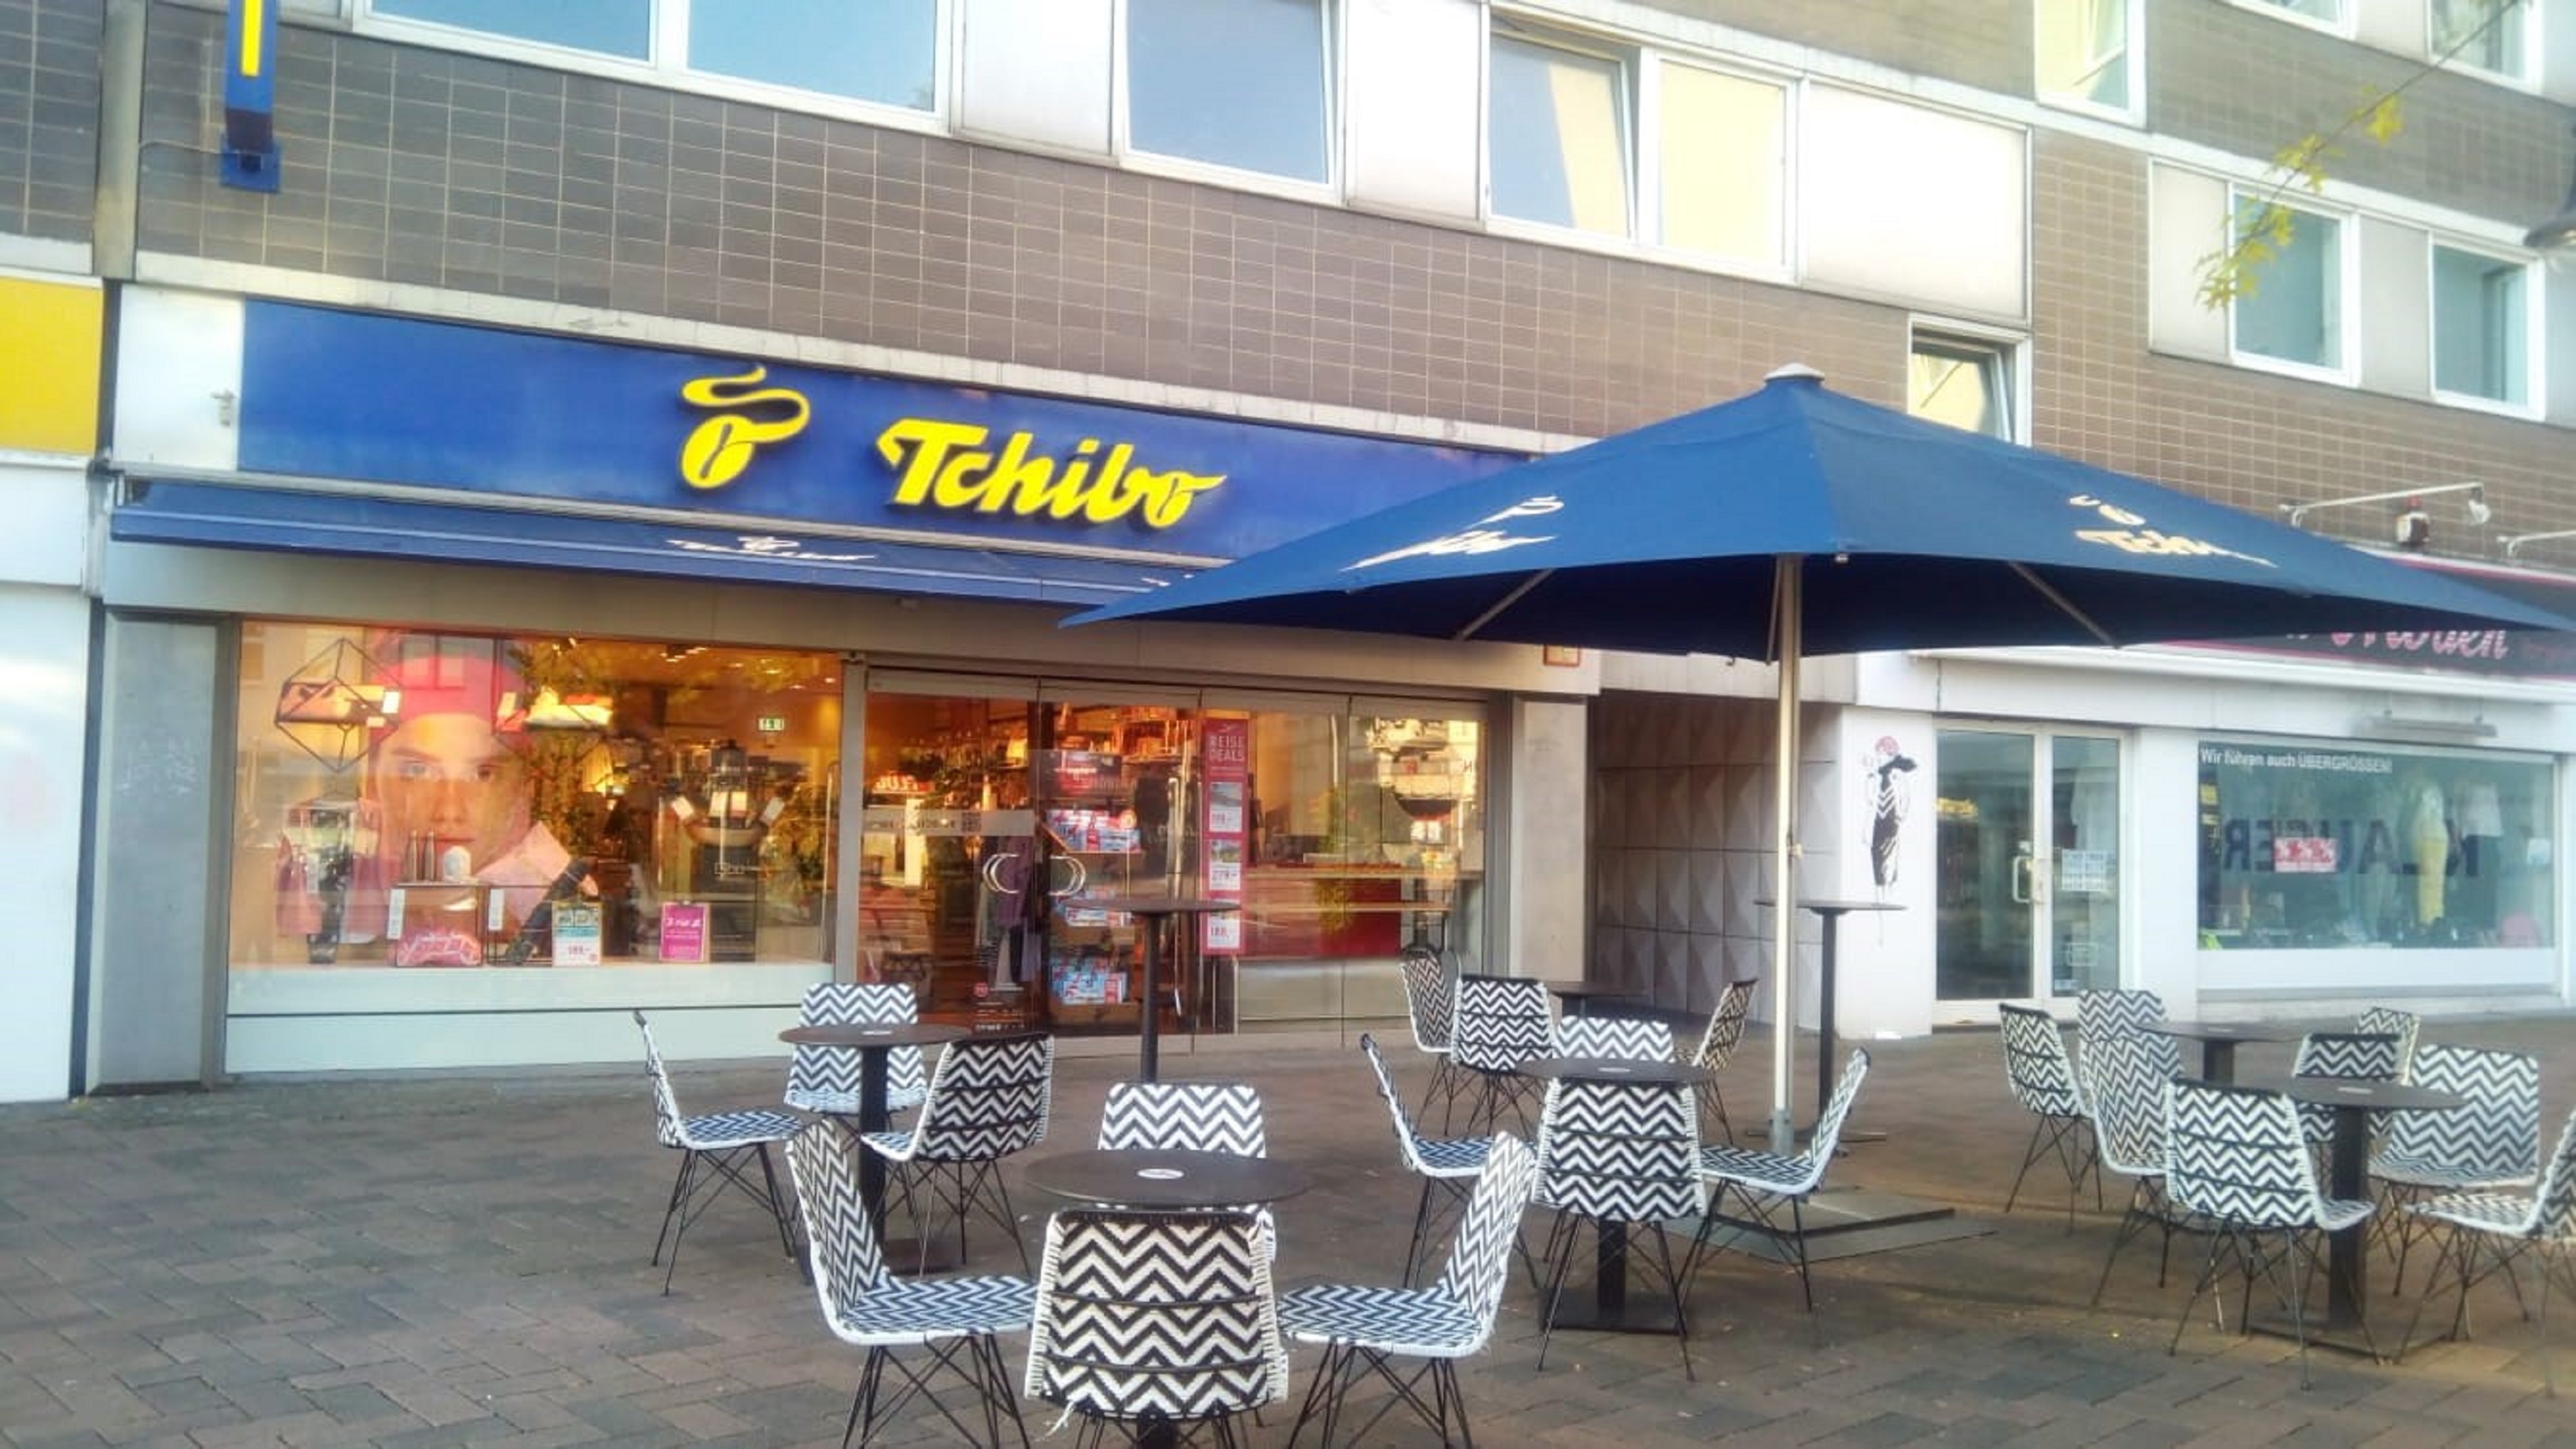 Tchibo Filiale mit Kaffee Bar Altmarkt 5, 46236 Bottrop